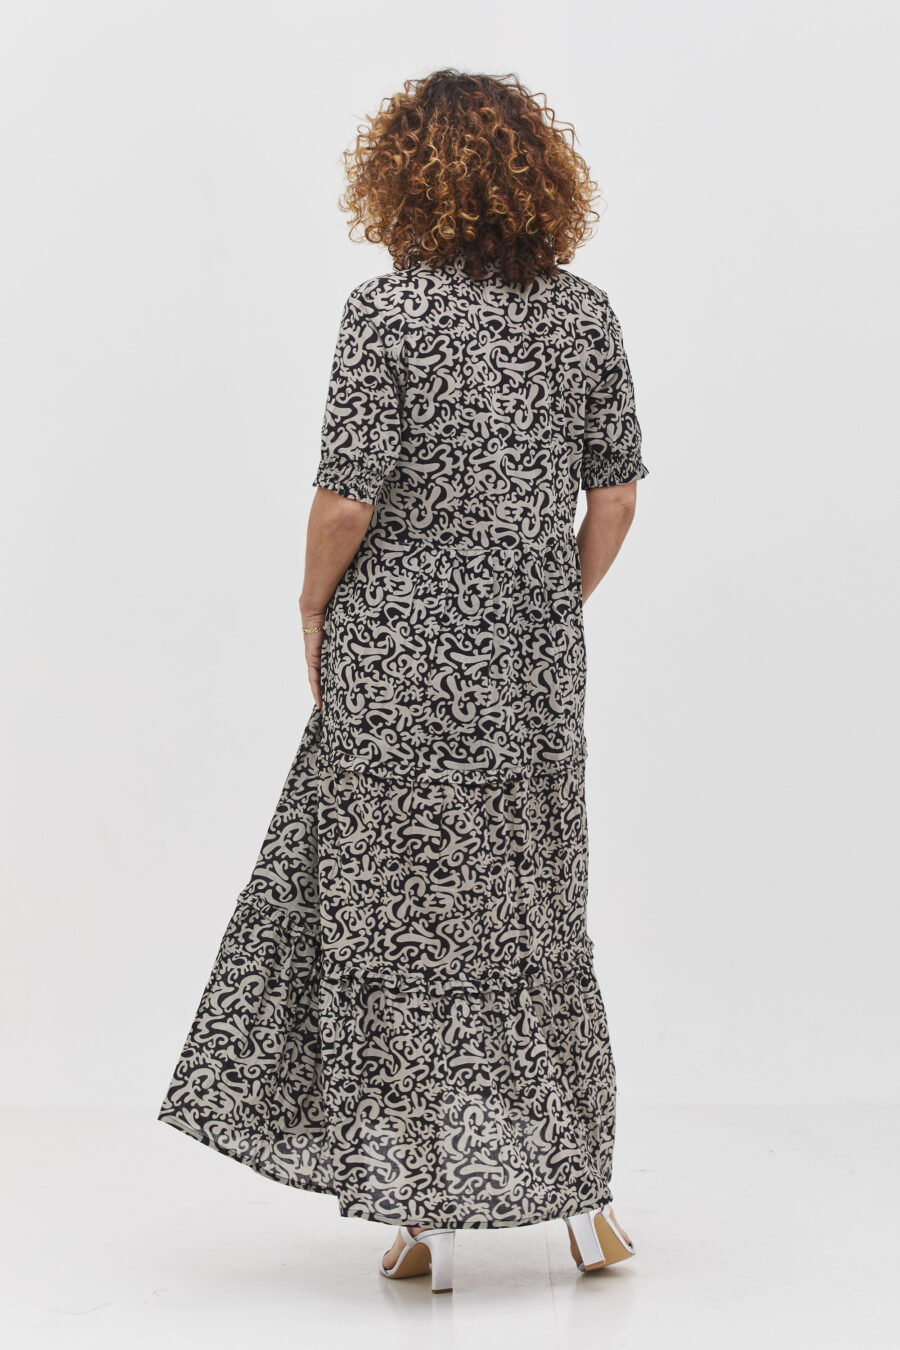 שמלת אפרת | שמלת מקסי בעיצוב ייחודי -פרינט בלאק פנטזי, שמלה שחורה עם הדפס מופשט בצבע אפור בהיר. של קומפורט זון בוטיק